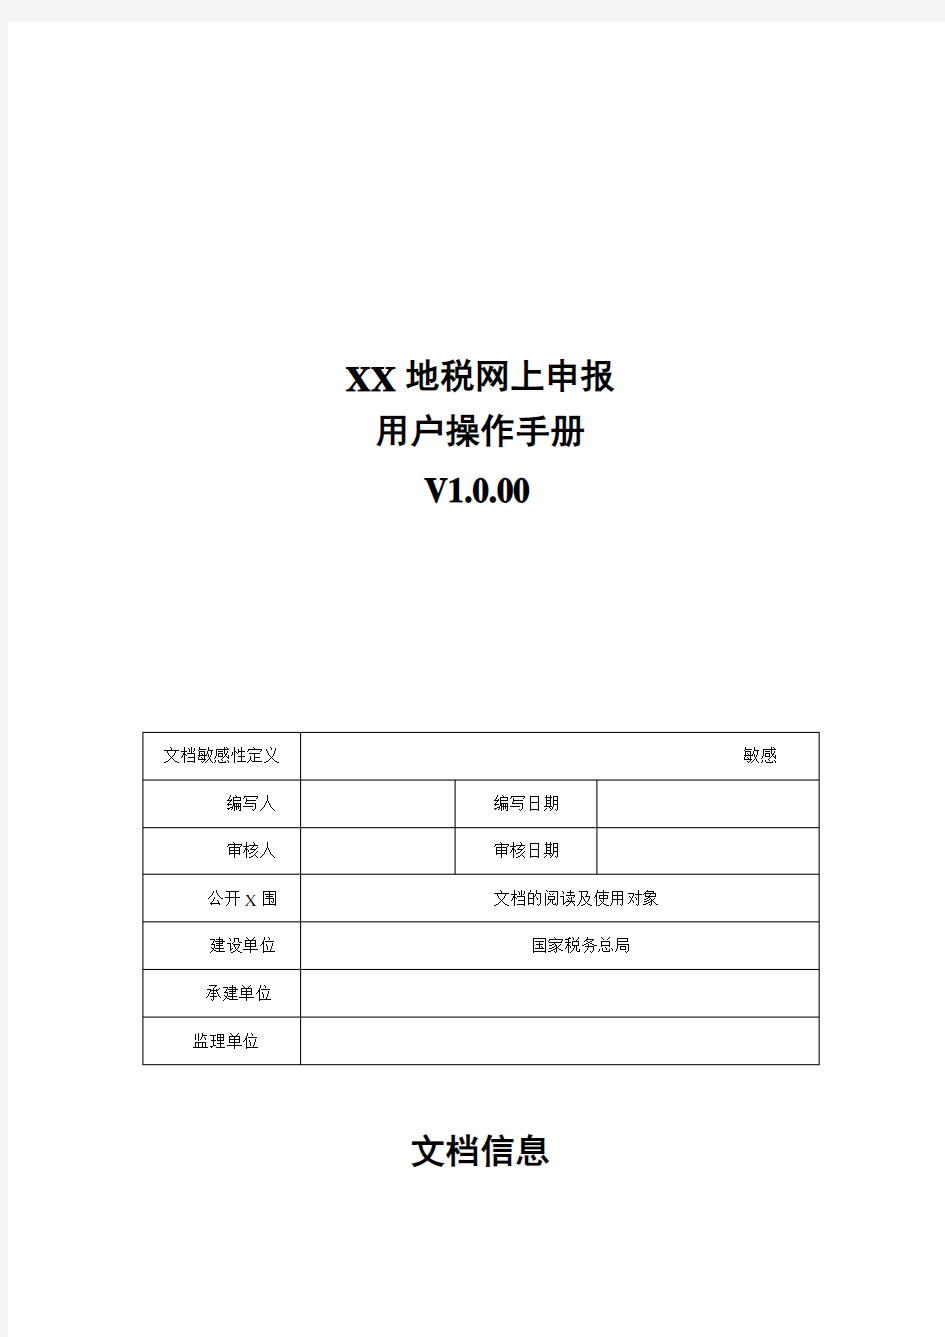 重庆地税网上申报-用户操作手册